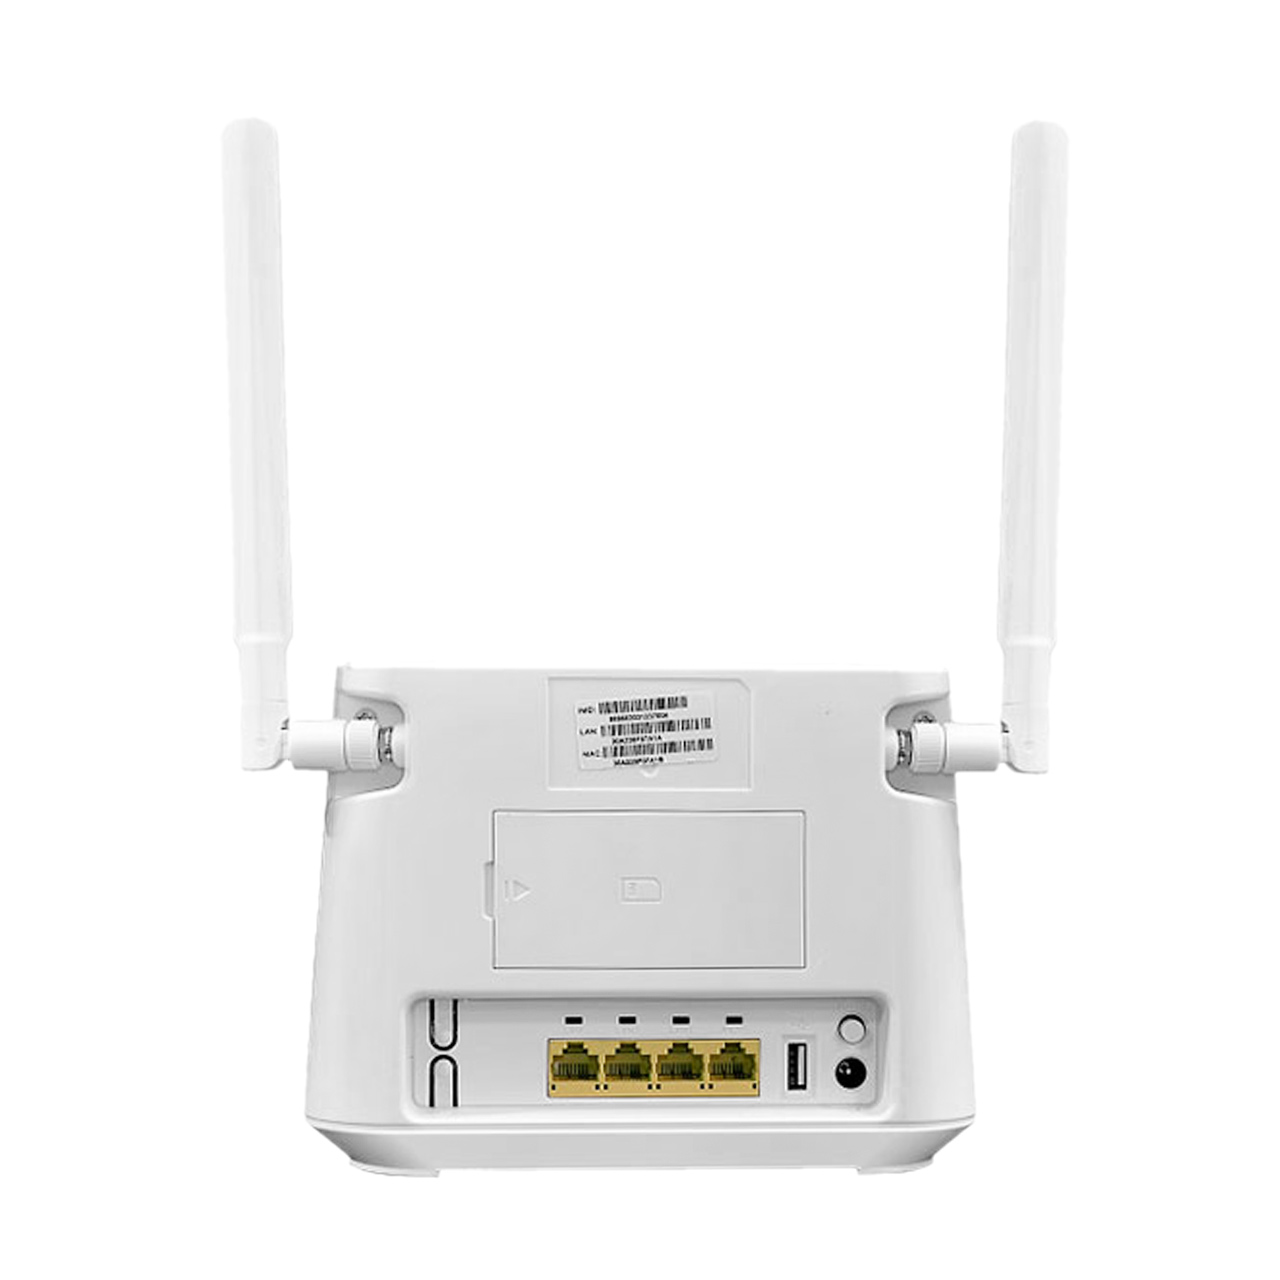 مودم 4G LTE Modem Router مدل U.TEL-L443 - سفید